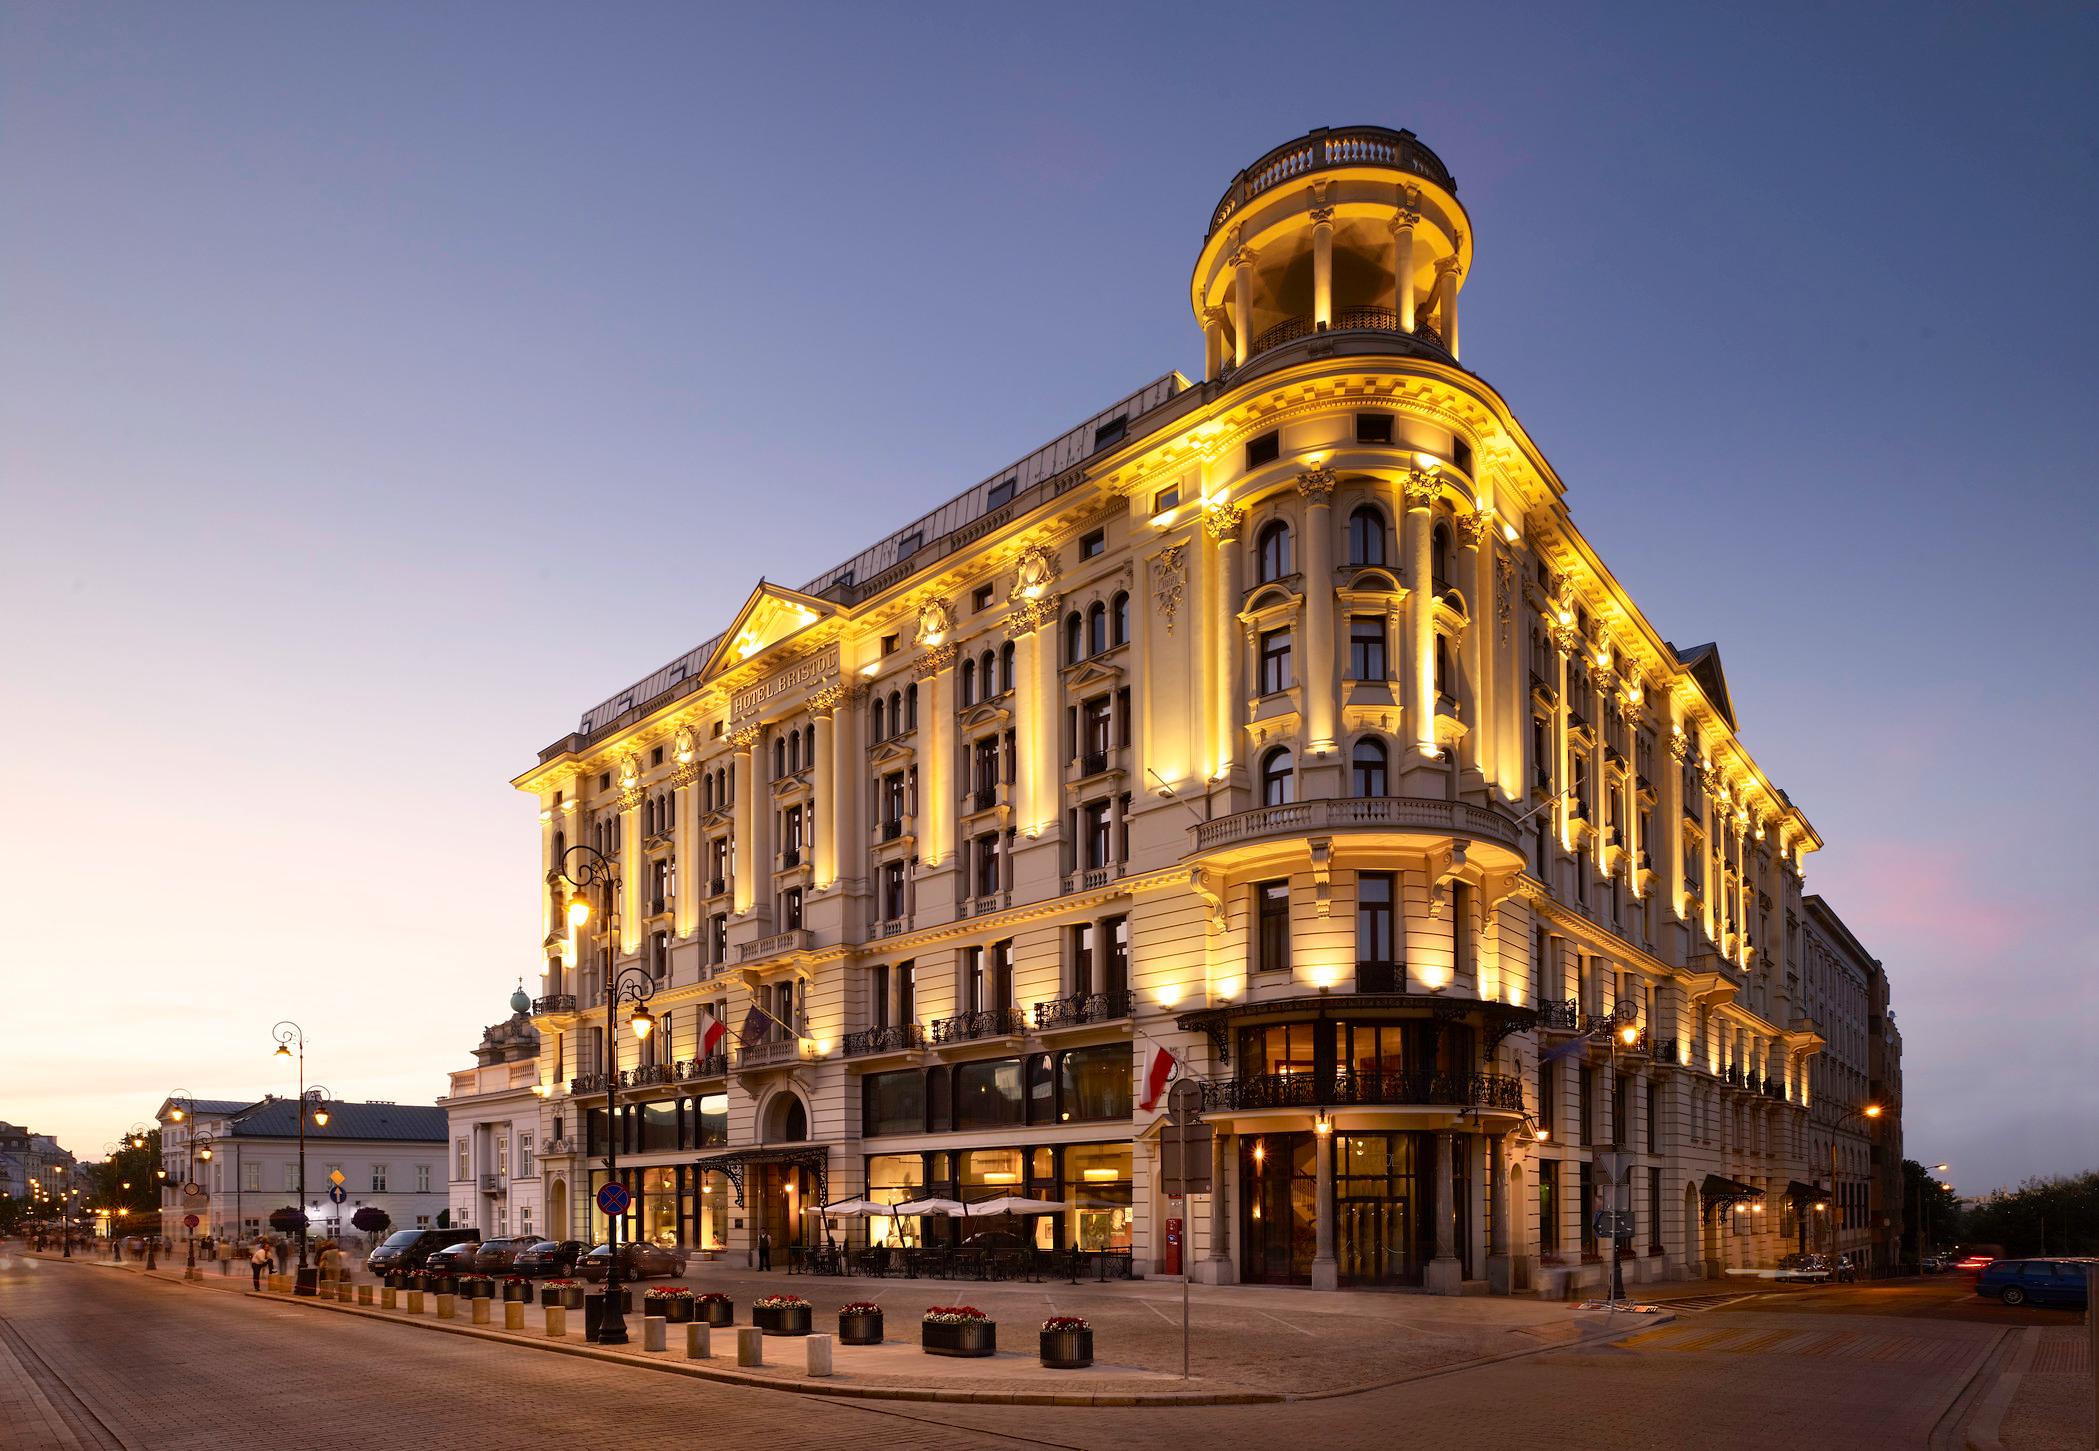 Hotel Bristol Warsaw, Warsaw : Five Star Alliance